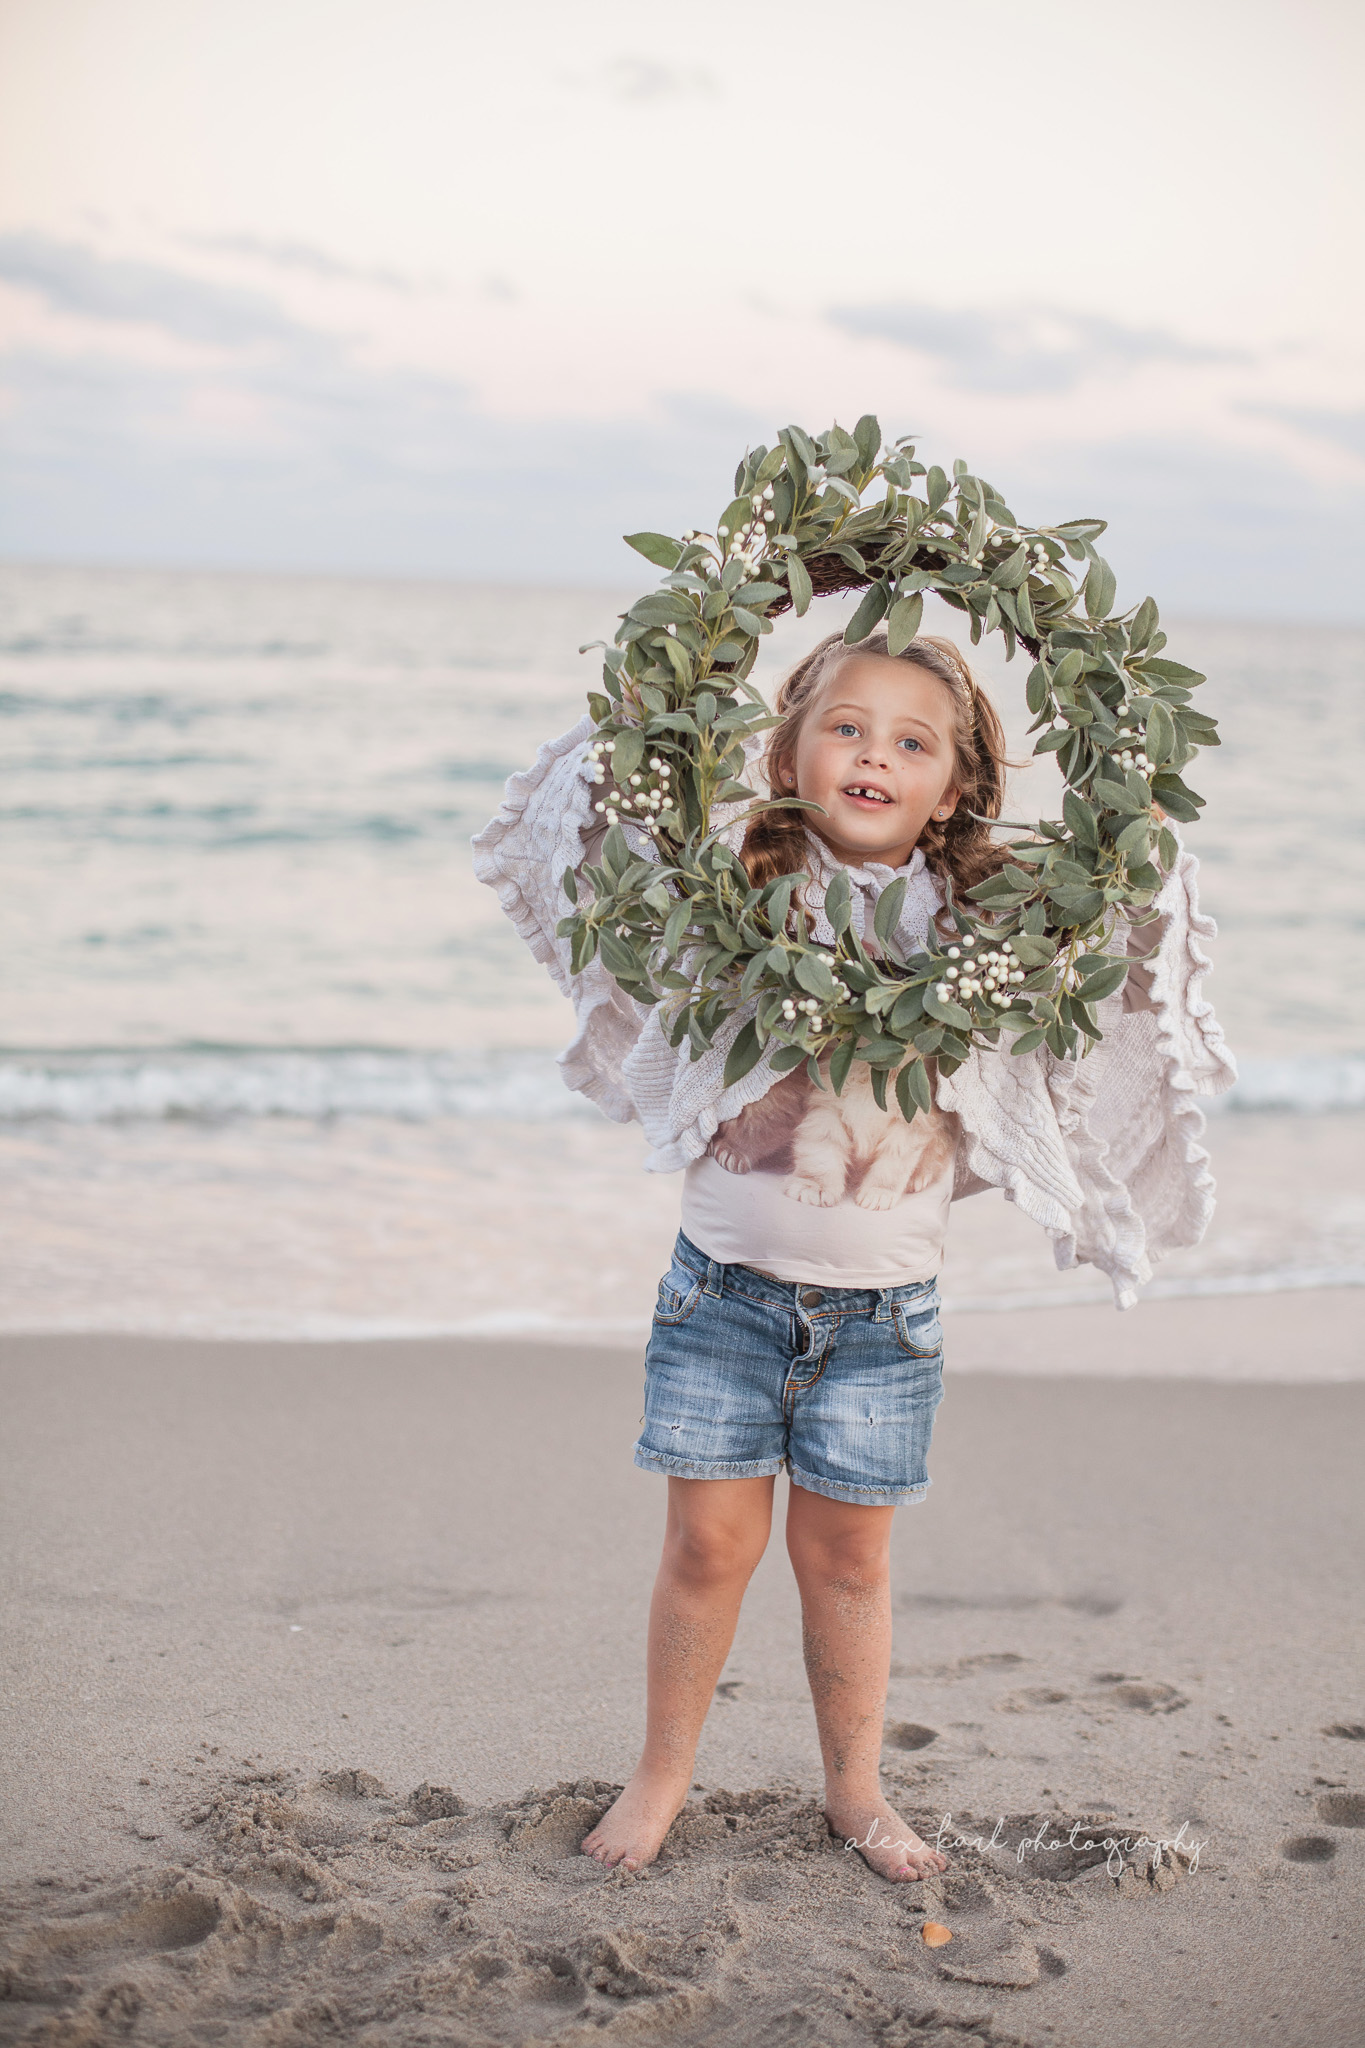 A girl holds a wreath | Alex Karl Photography | Palm Beach Family Photographer